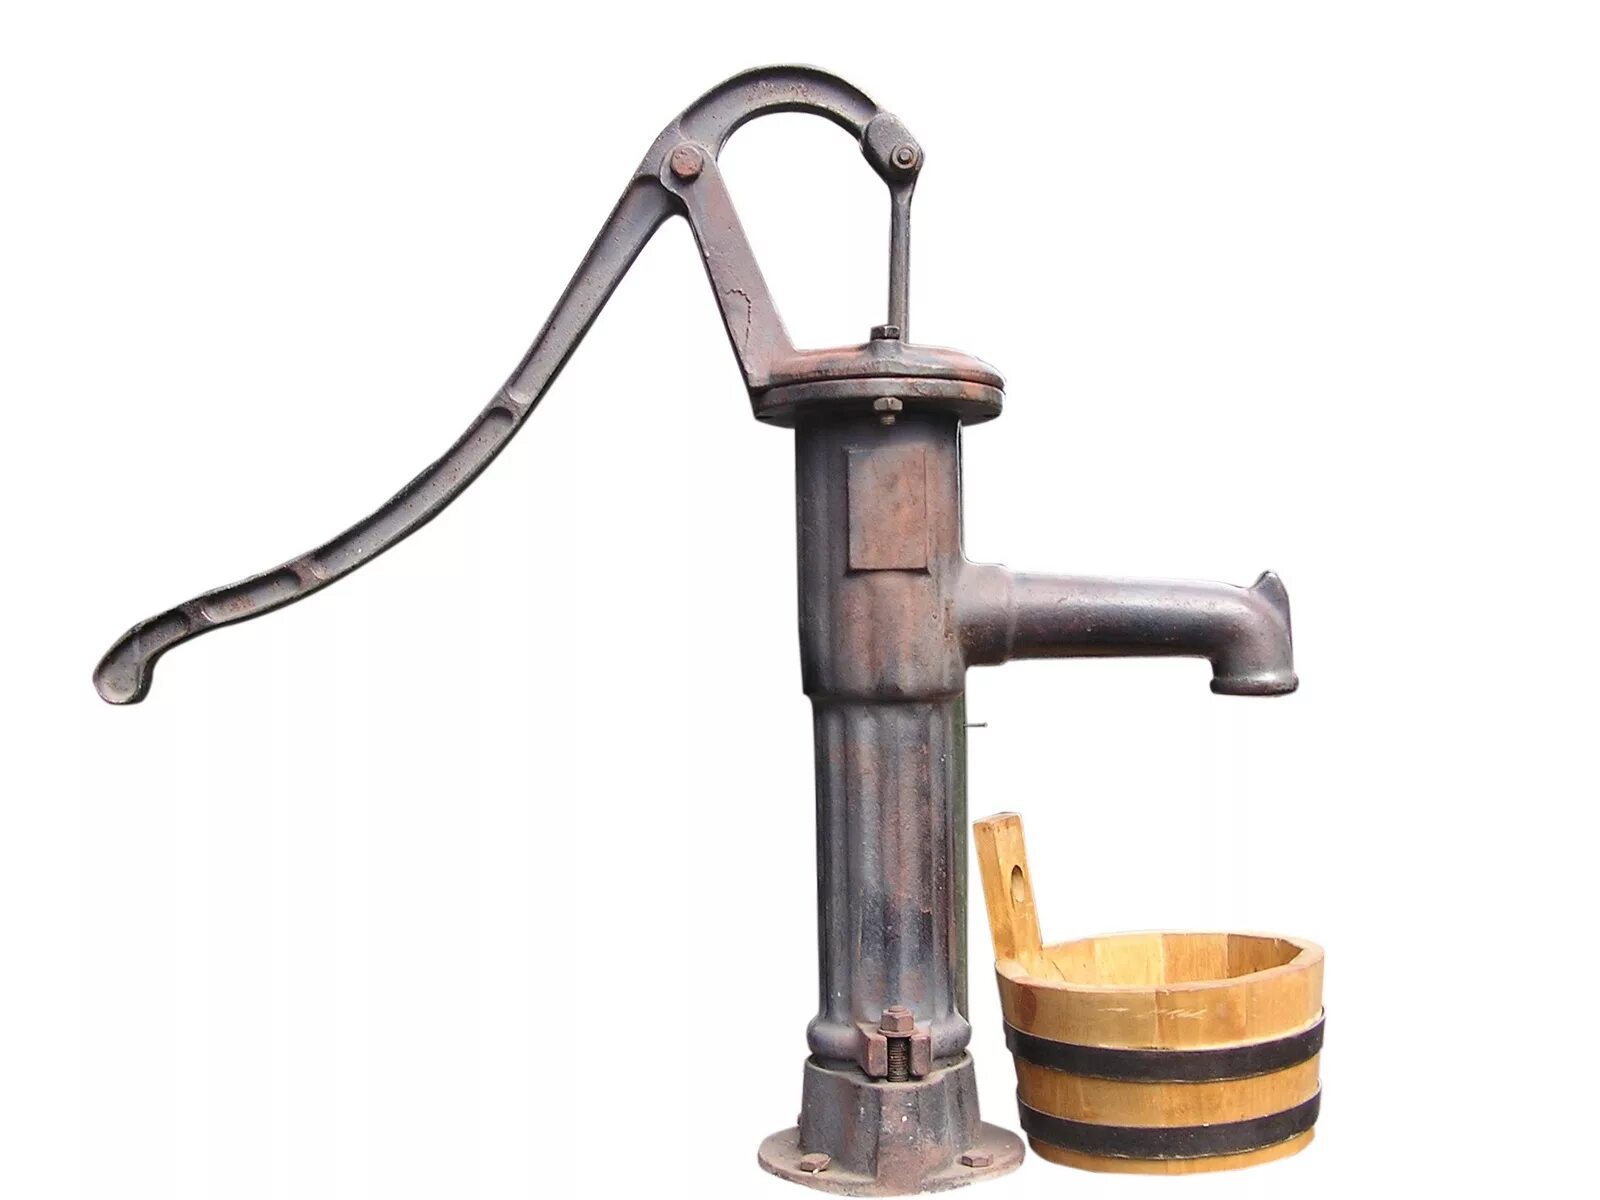 Ручной поршневой насос для воды. Ручная водяная колонка. Ручной насос для воды. Механический насос для колодца. Старинная водяная колонка.